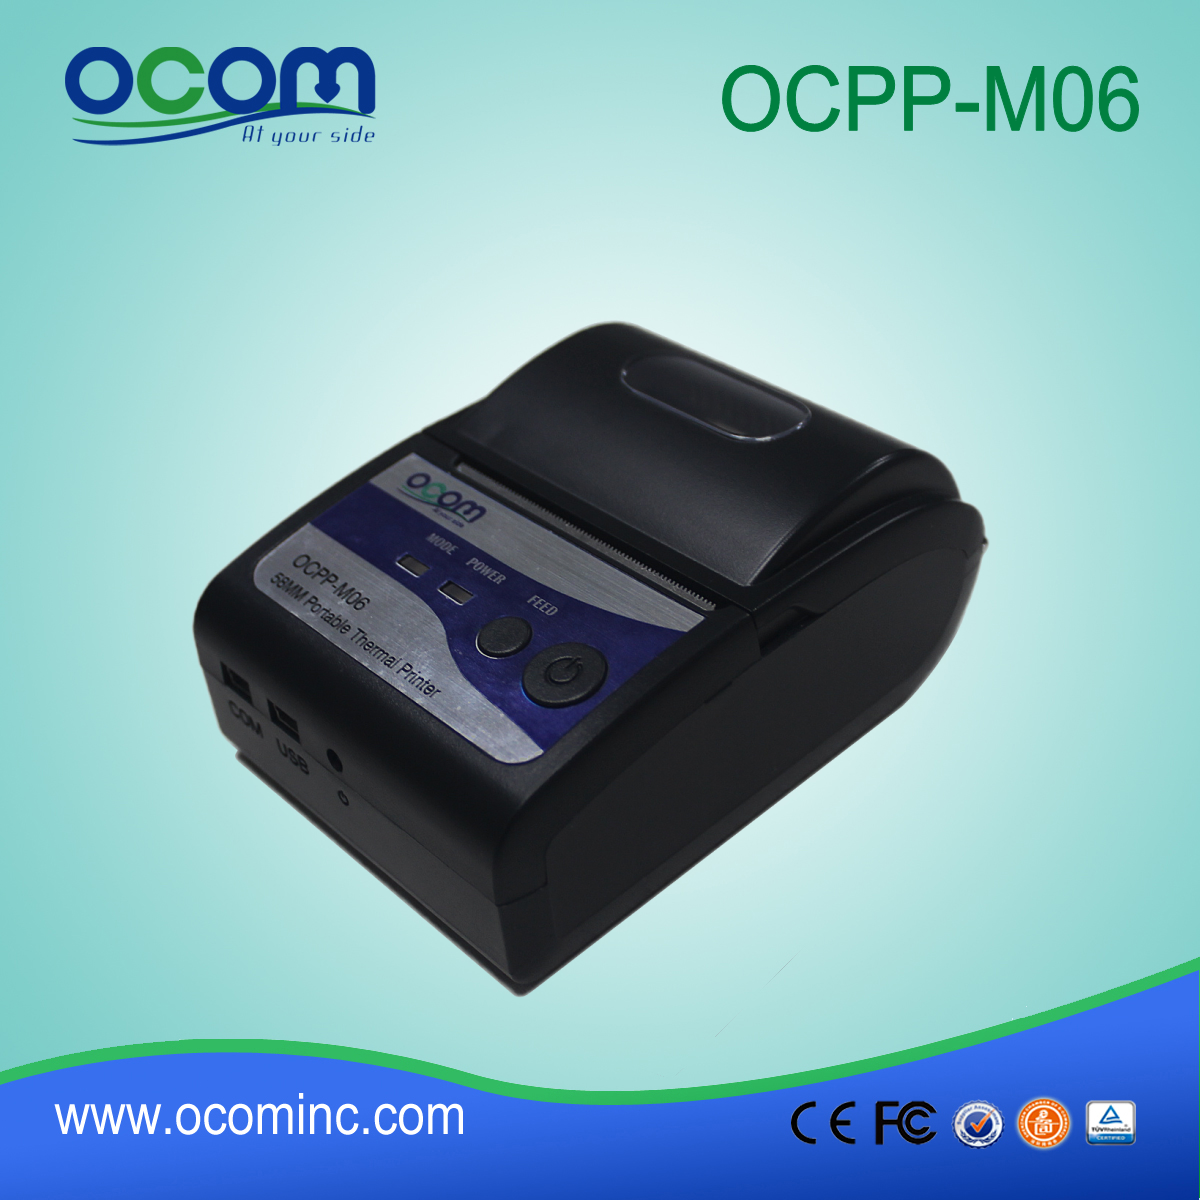 OCPP-M06: a buon mercato stampante termica della fabbrica della Cina 2 pollici, stampante termica da 2 pollici